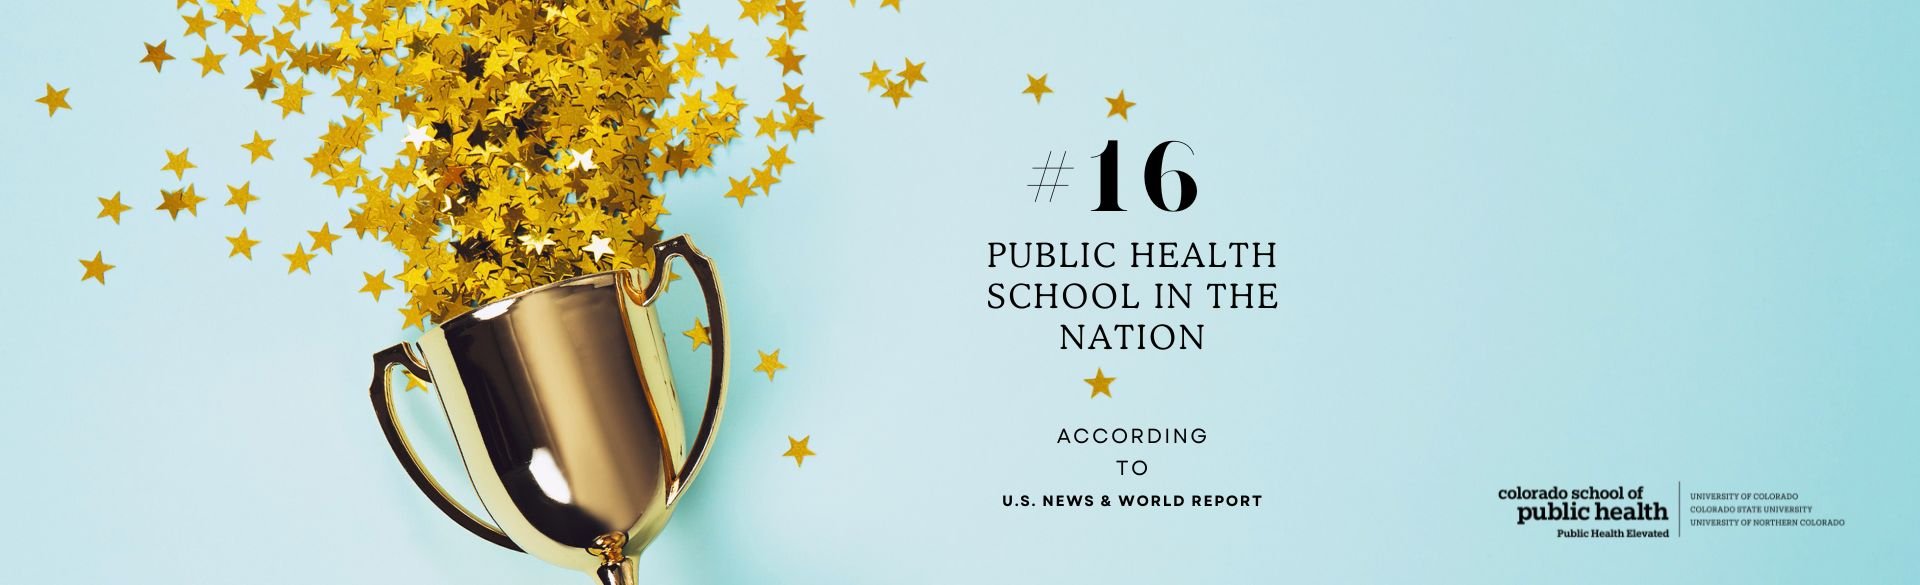 Colorado School of Public Health Ranked 16th